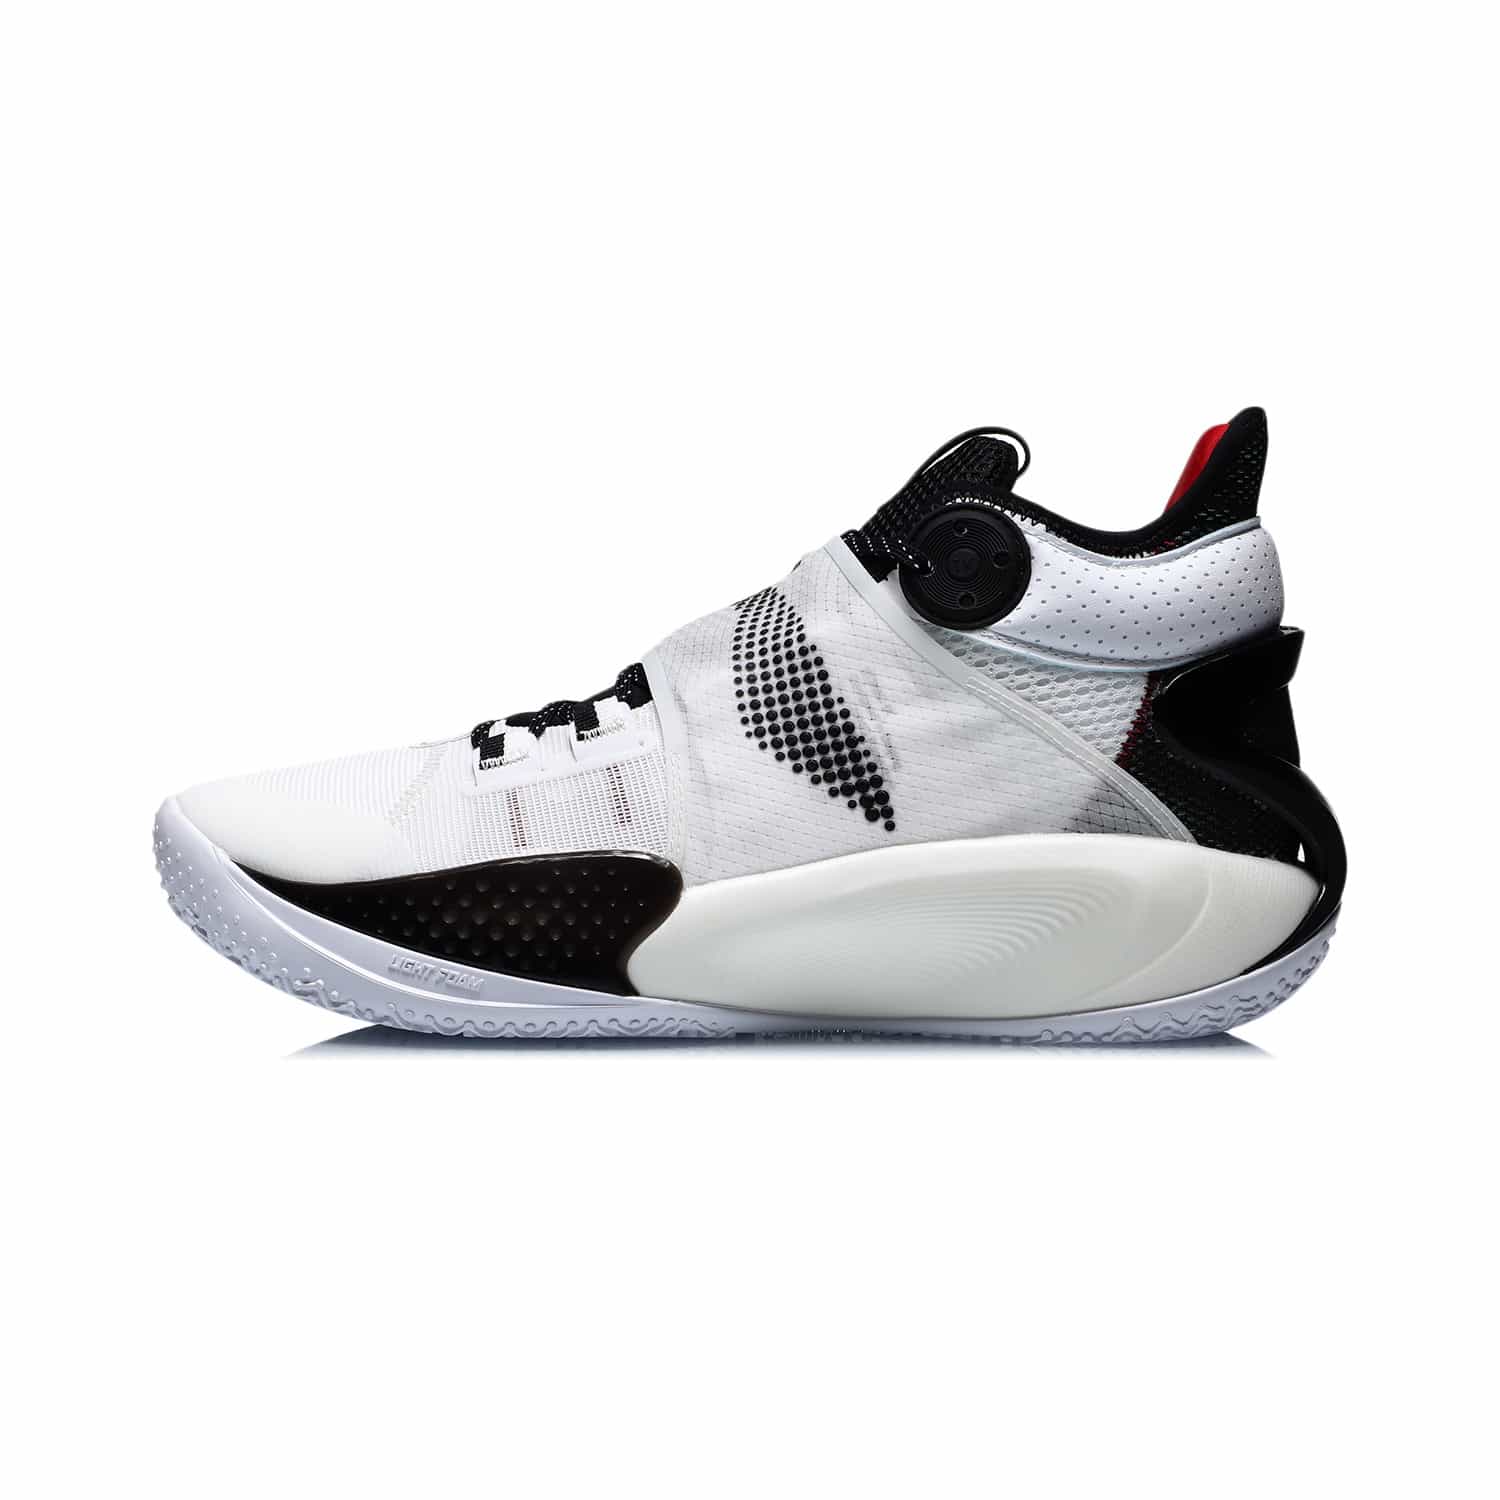 音速 IX 實戰籃球鞋 - 標準白/黑色